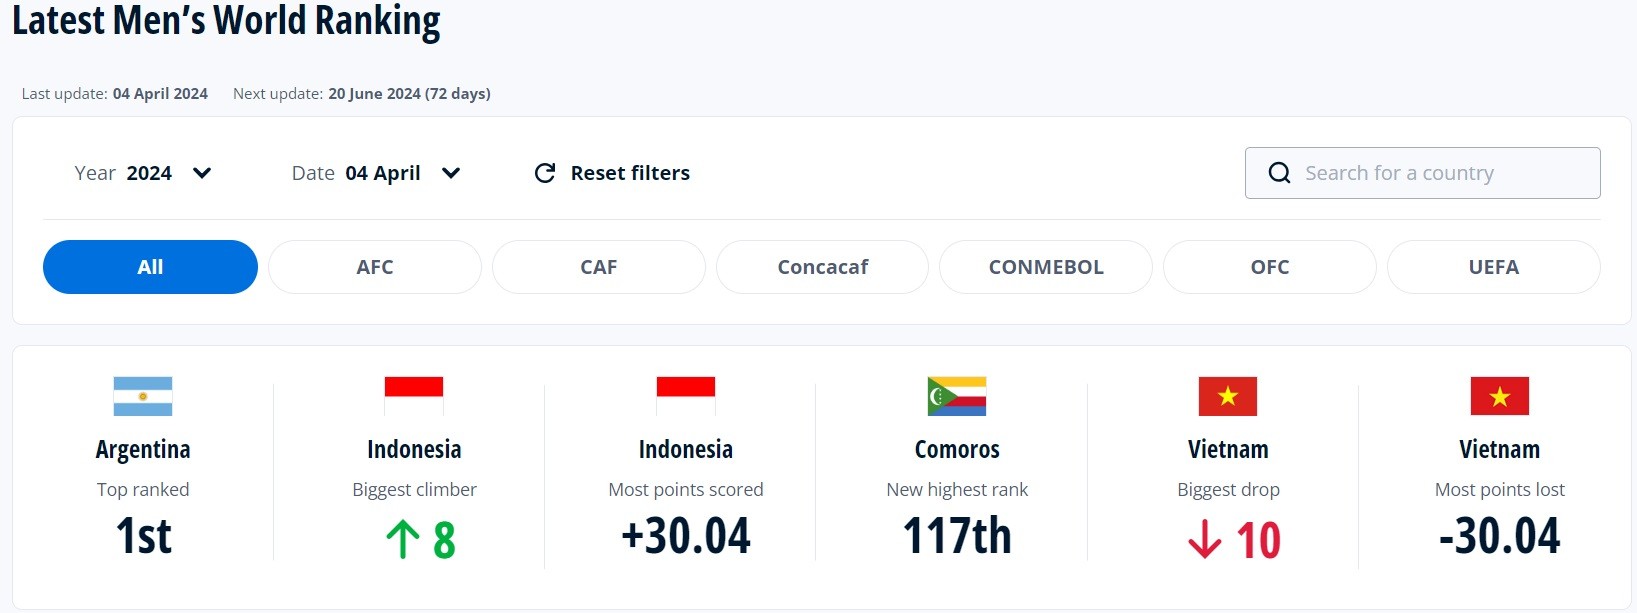 erbaru Indonesia naik 8 peringkat usai mendapat tambahan 30.04 poin ke posisi 134. Capaian itu membuat Indonesia jadi negara dengan peningkat peringkat dan poin tertinggi di antara negara lain. (foto: FIFA)